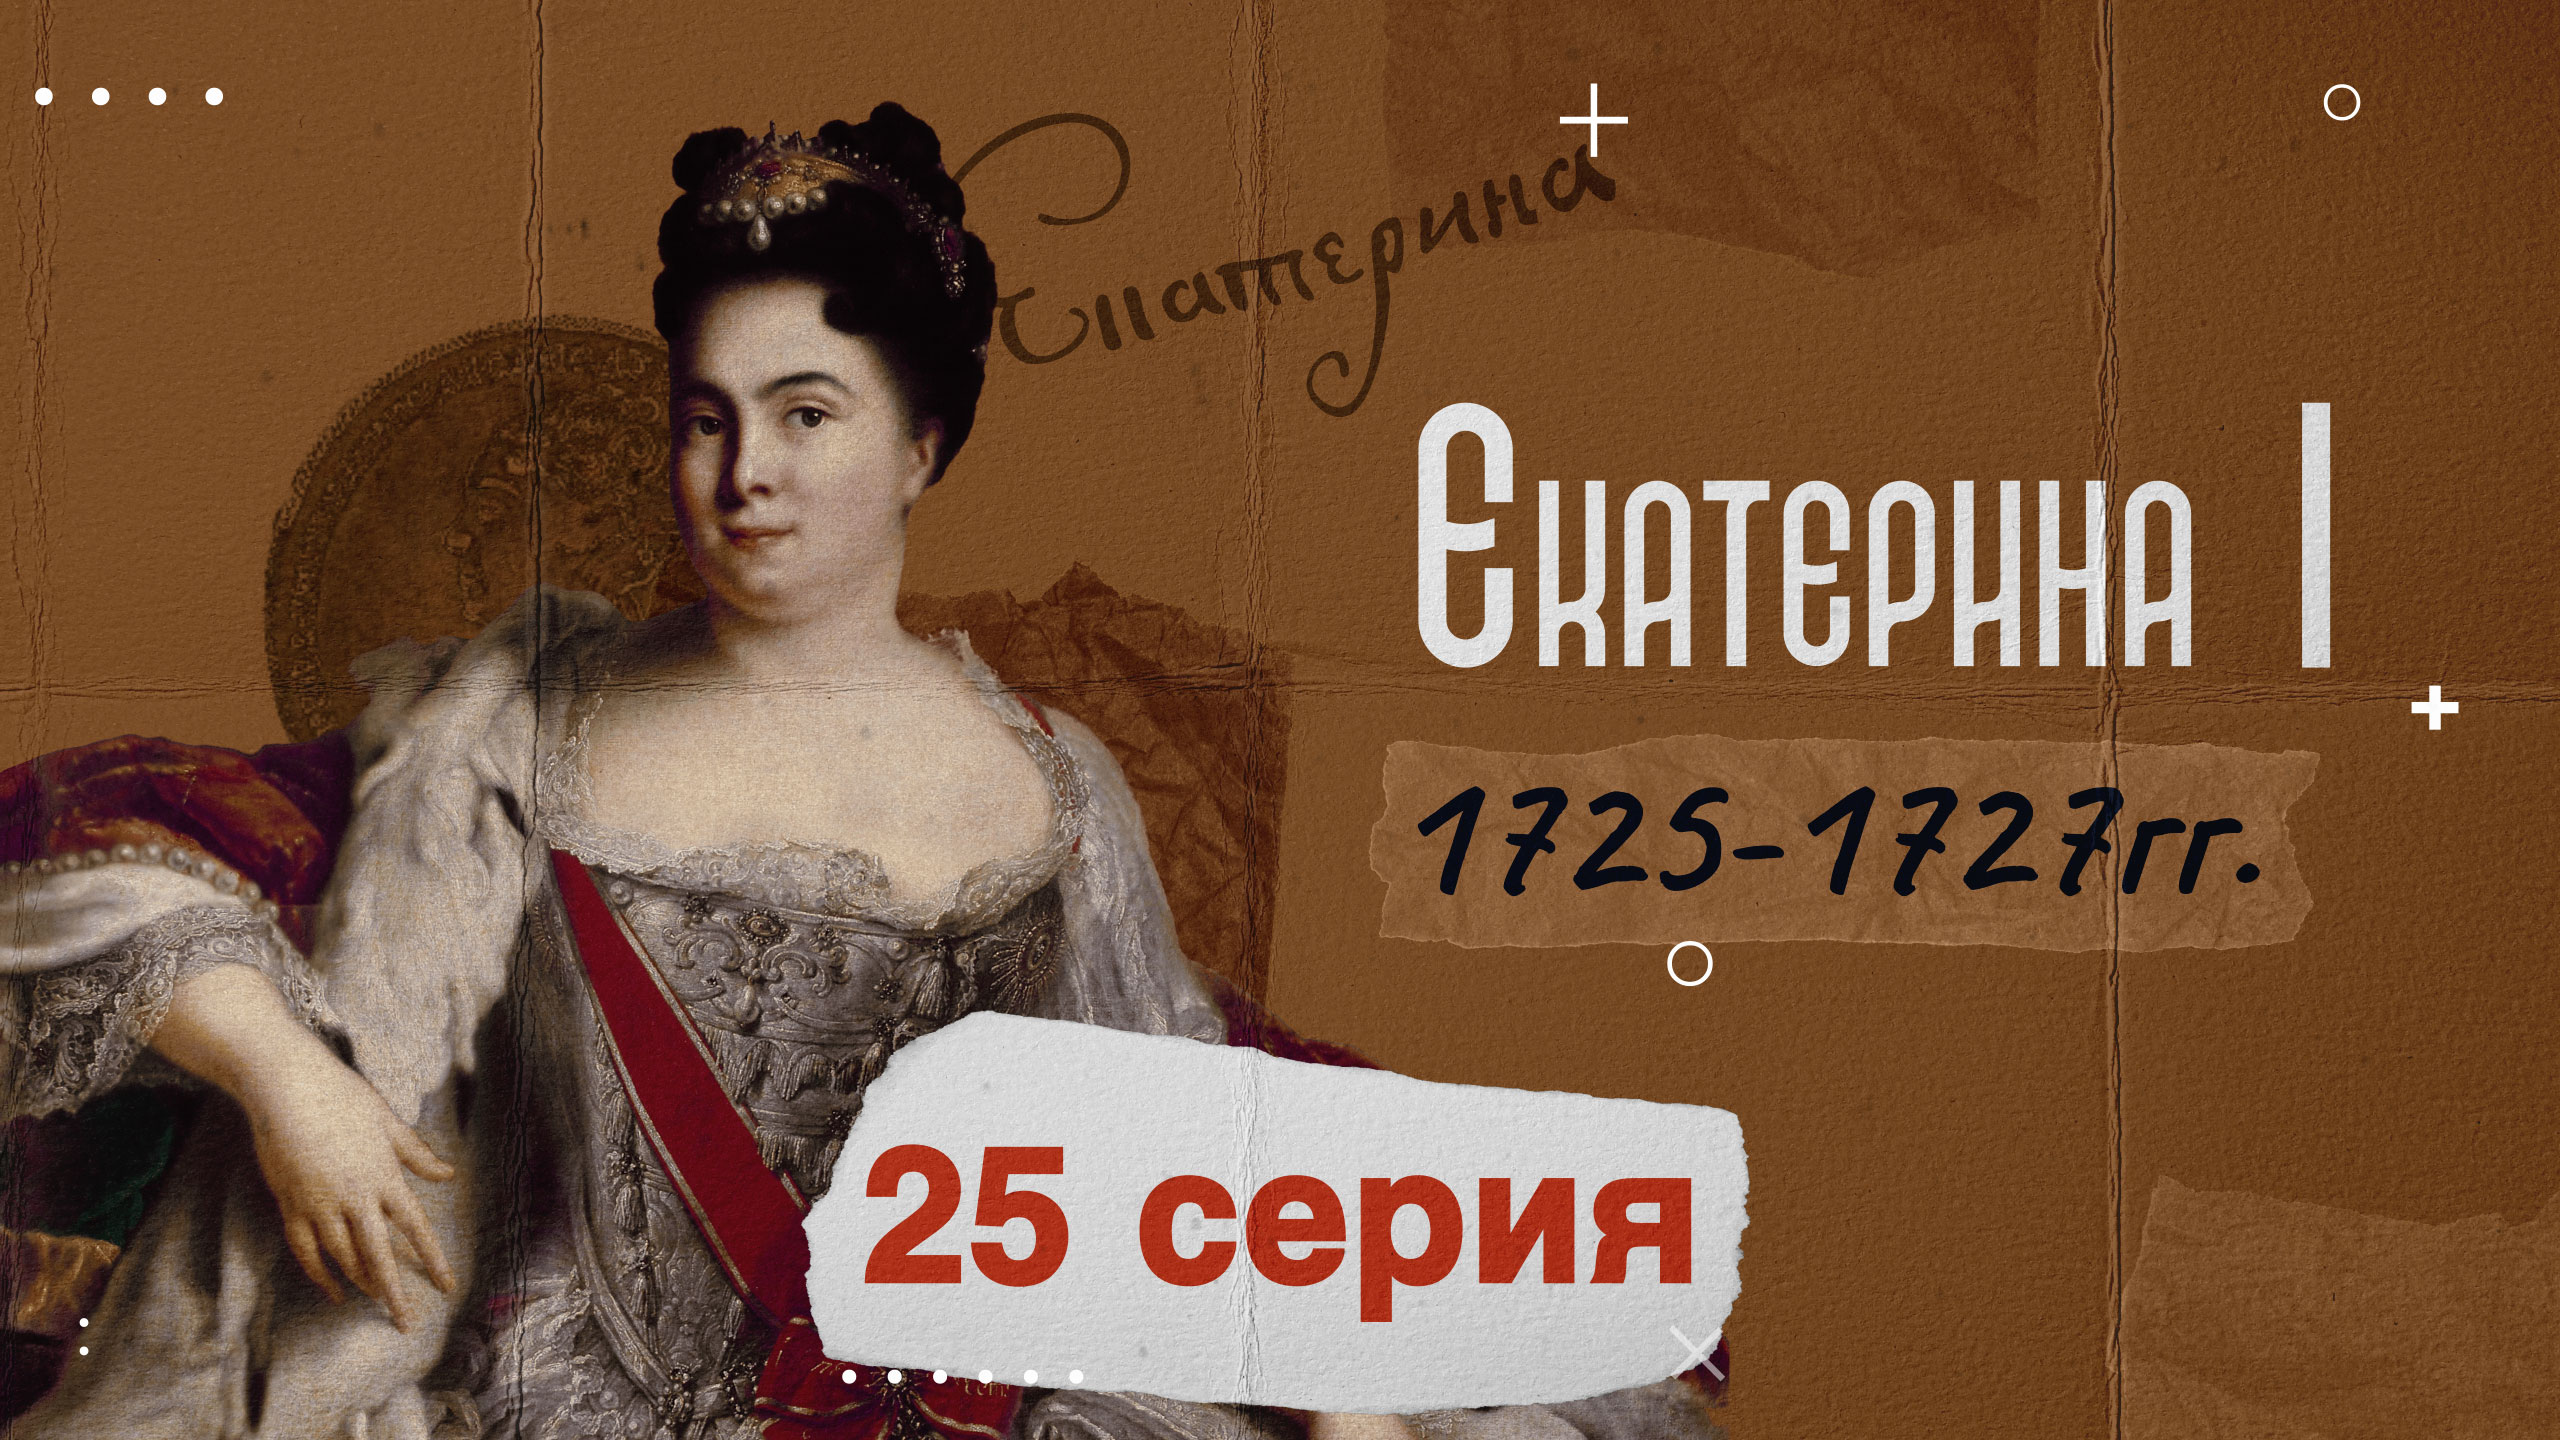 Царица Екатерина Первая - 1725-1727г. История России